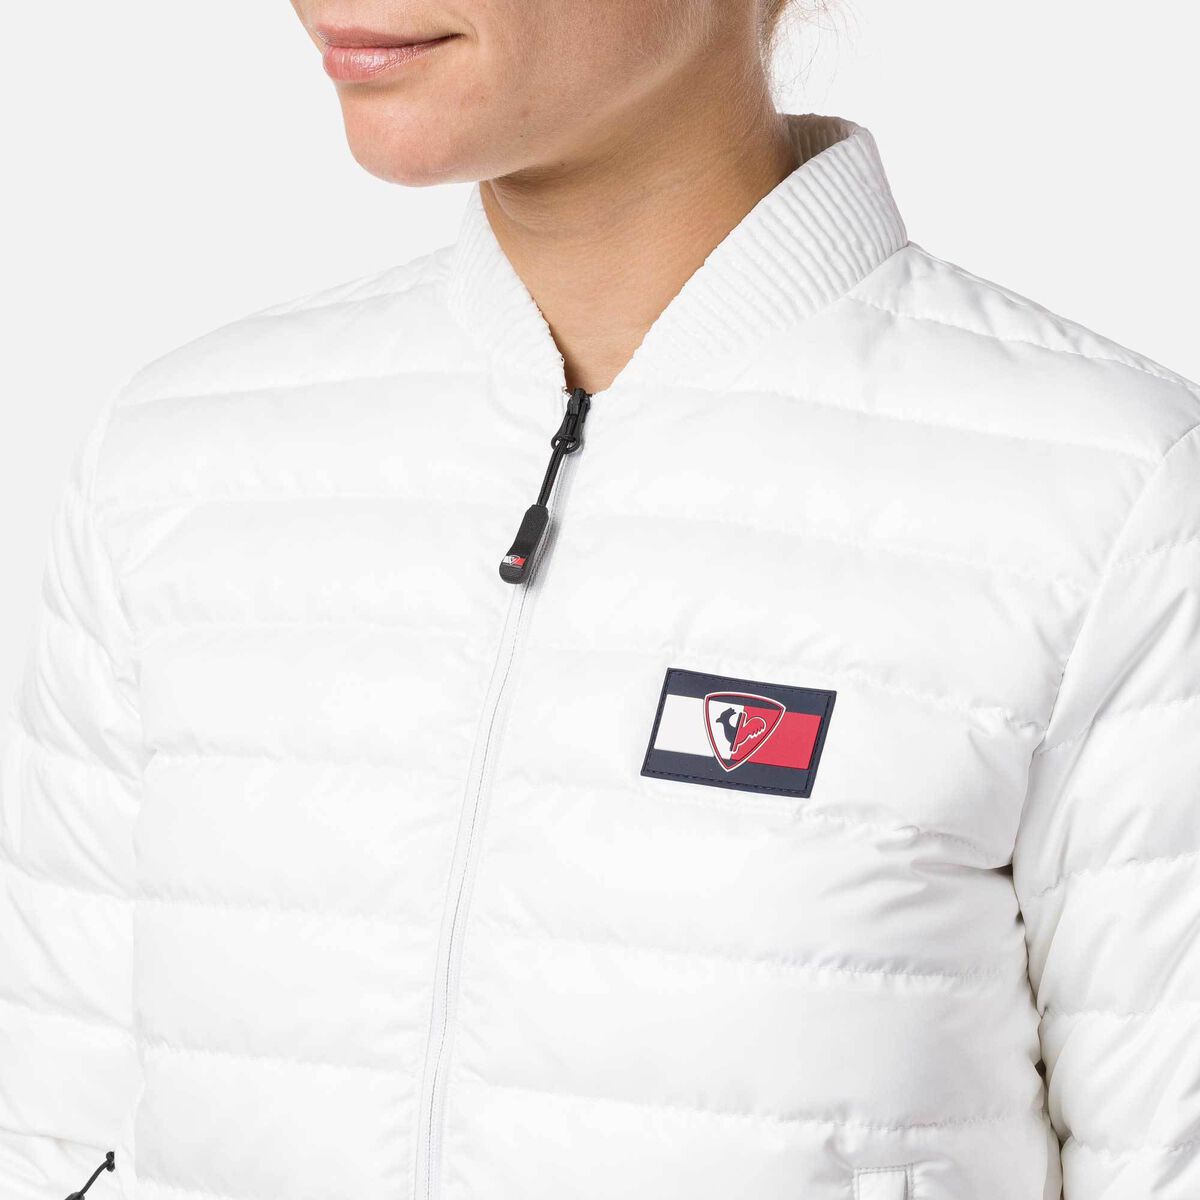 Tommy Hilfiger Women's Mini-Ripstop Light Down Jacket | Light jackets Women  | Rossignol